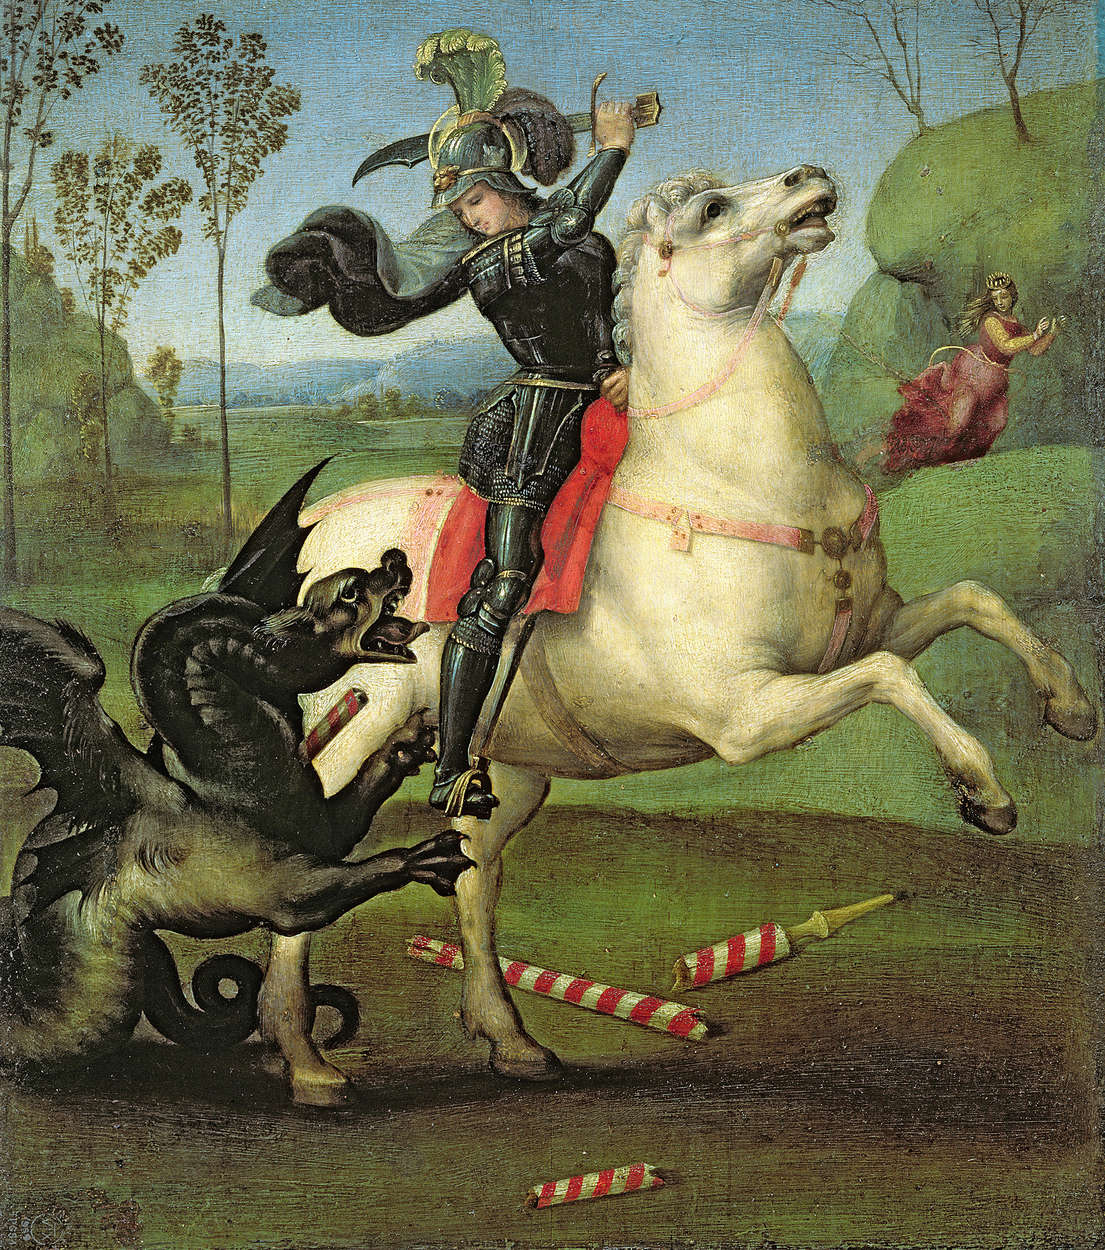             Mural "San Jorge luchando contra el dragón" de Rafael
        